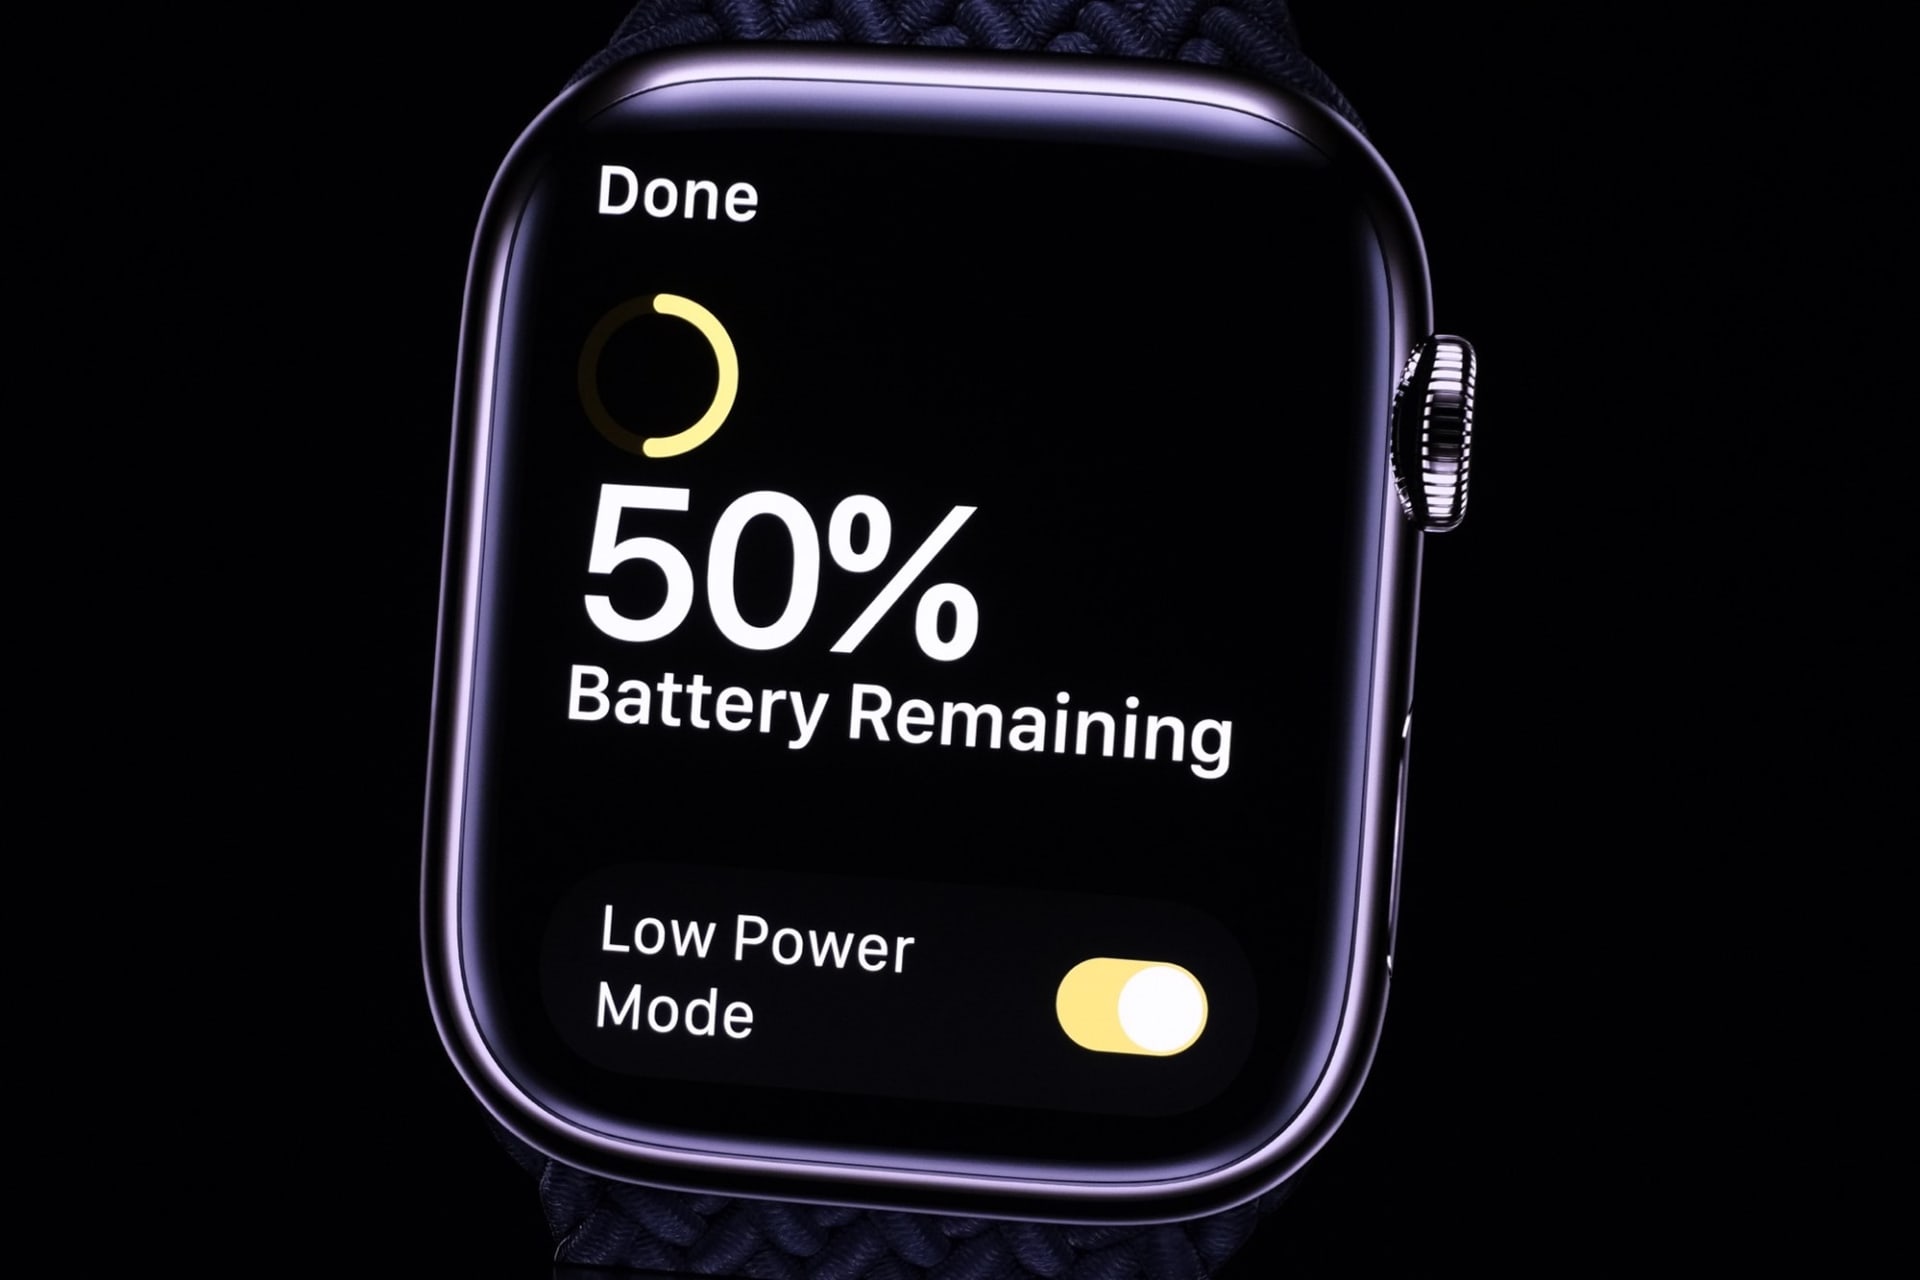 Softwarovou novinkou pro všechny Apple Watch je úsporný Low Power Mode